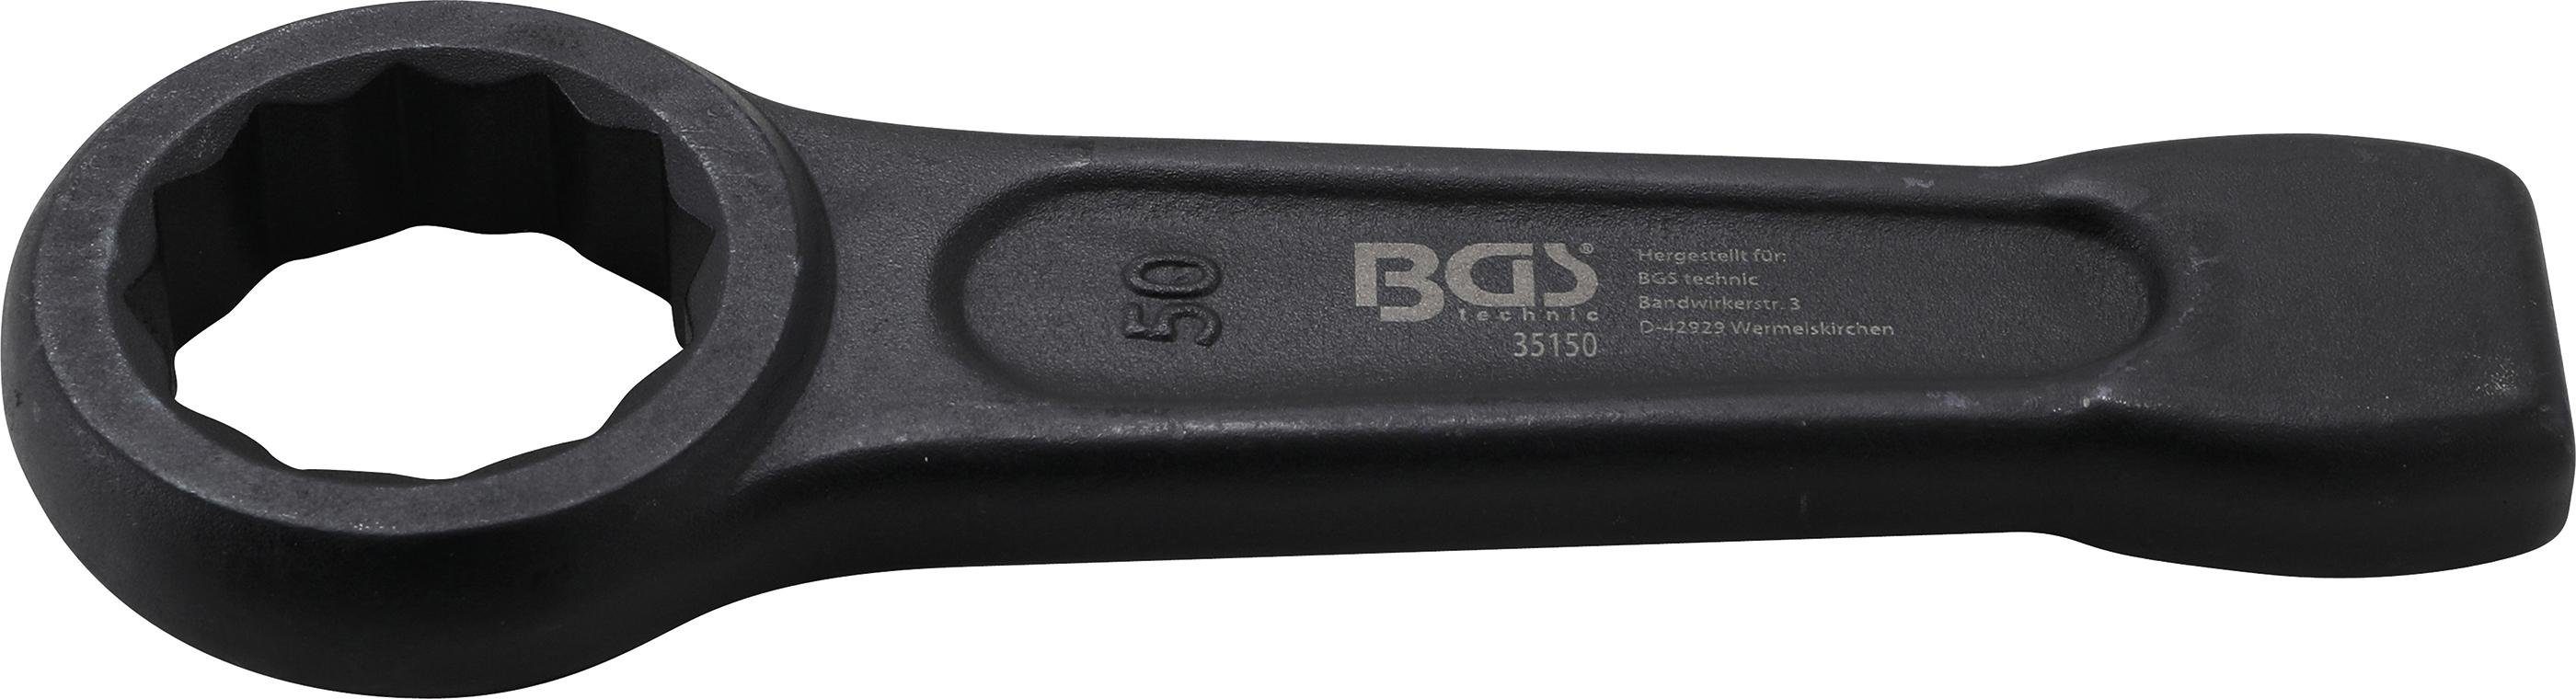 SW BGS Ringschlüssel Schlag-Ringschlüssel, mm technic 50